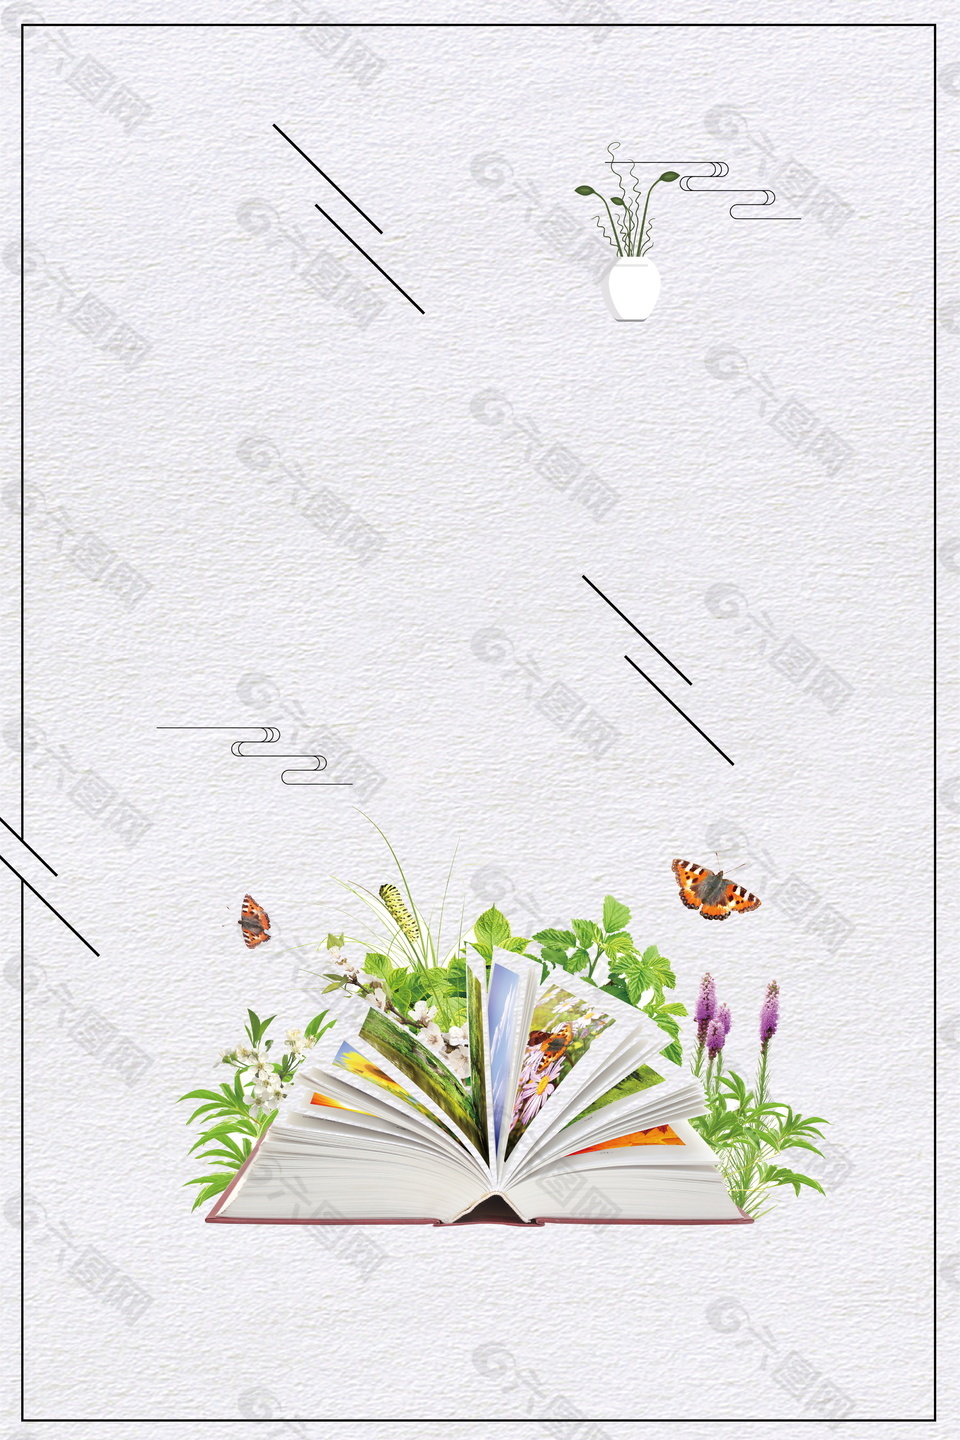 彩绘书本花朵蝴蝶边框阅读背景素材